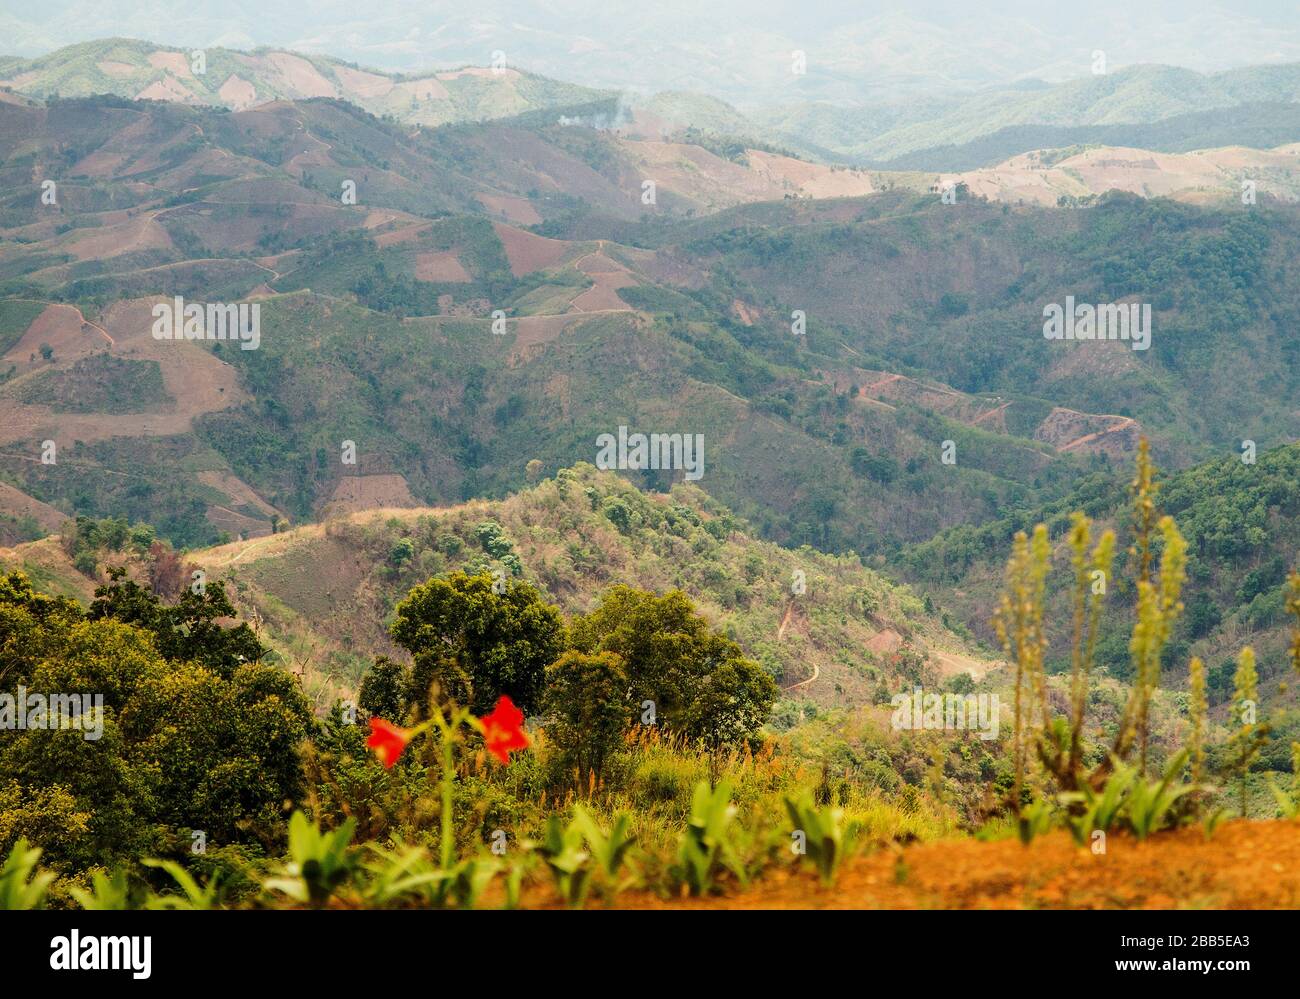 Sur le plateau à côté de la pente raide de montagne se trouve la plantation de café du village de Maneepruek. Les montagnes en face sont déjà au Laos. Banque D'Images